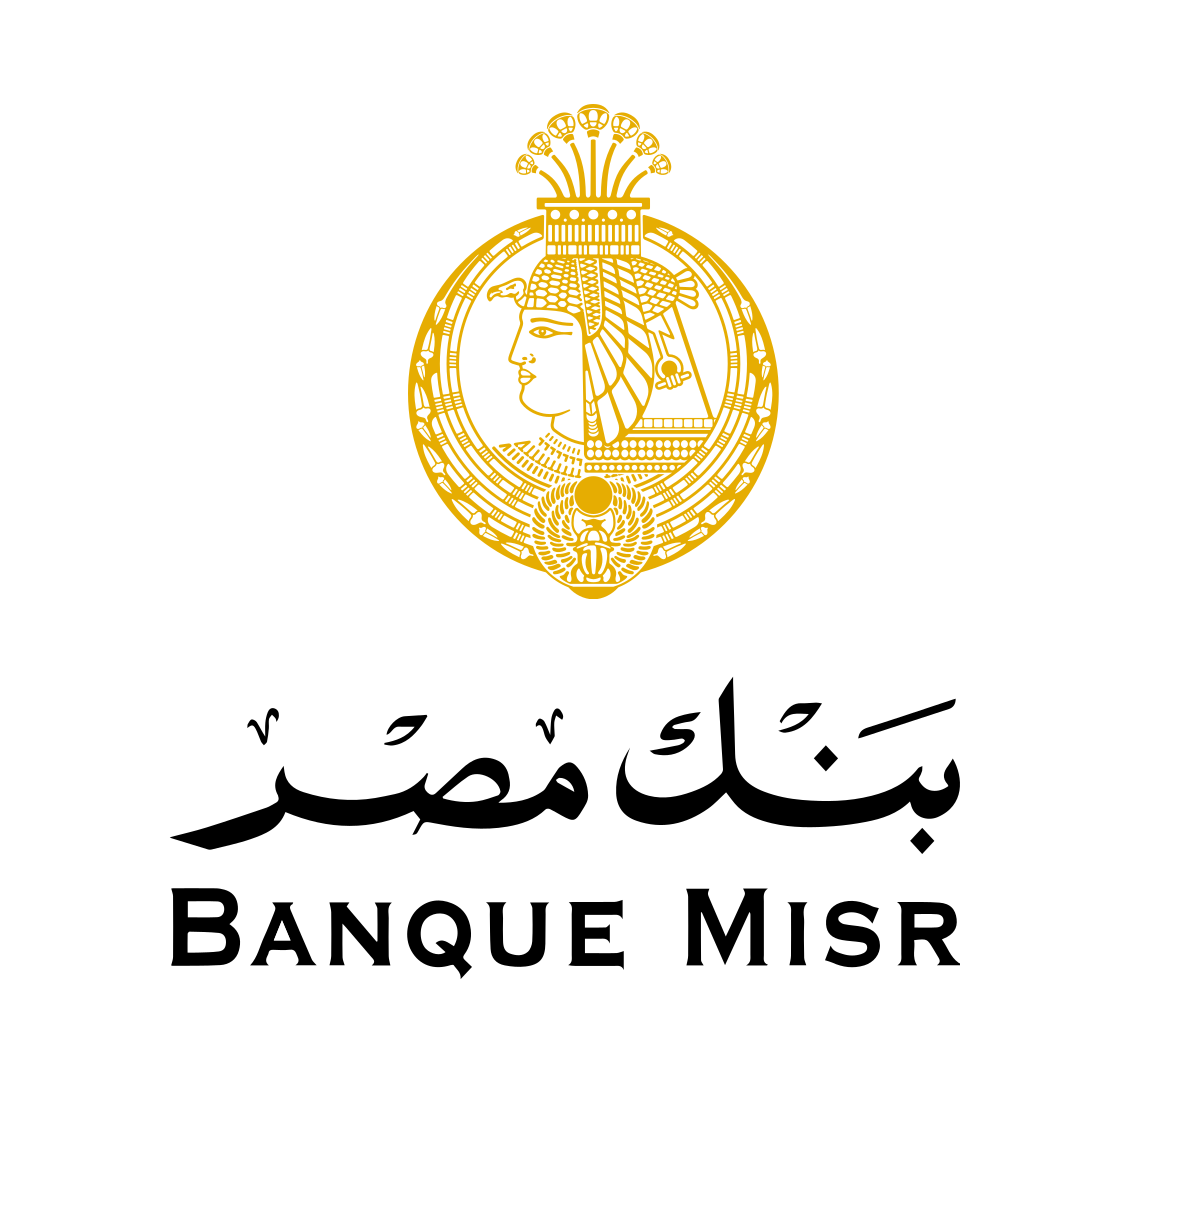 Banque Misr (BM)